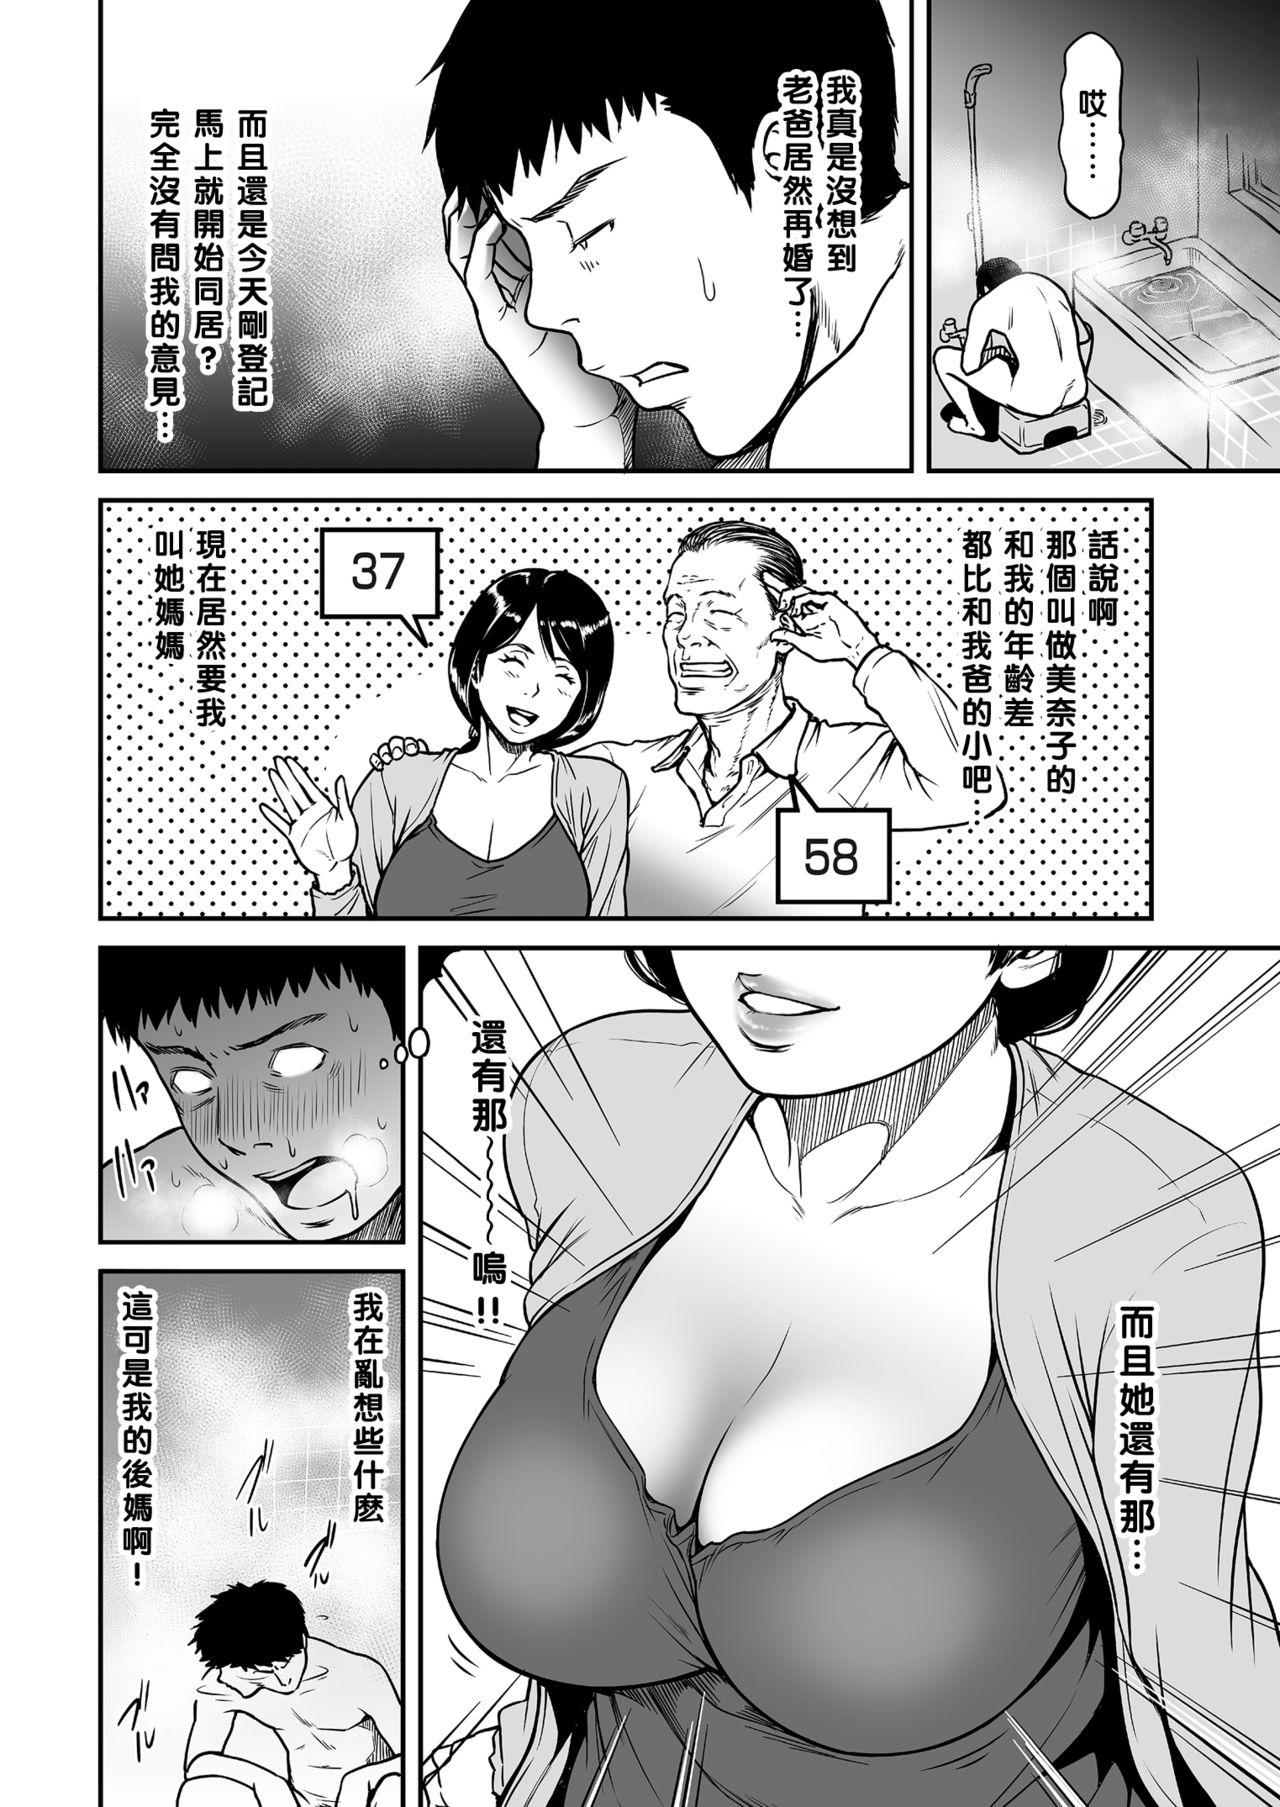 Perra Kaa-san ga, Onna no Yosa o Oshiete Ageru. Nurse - Page 2